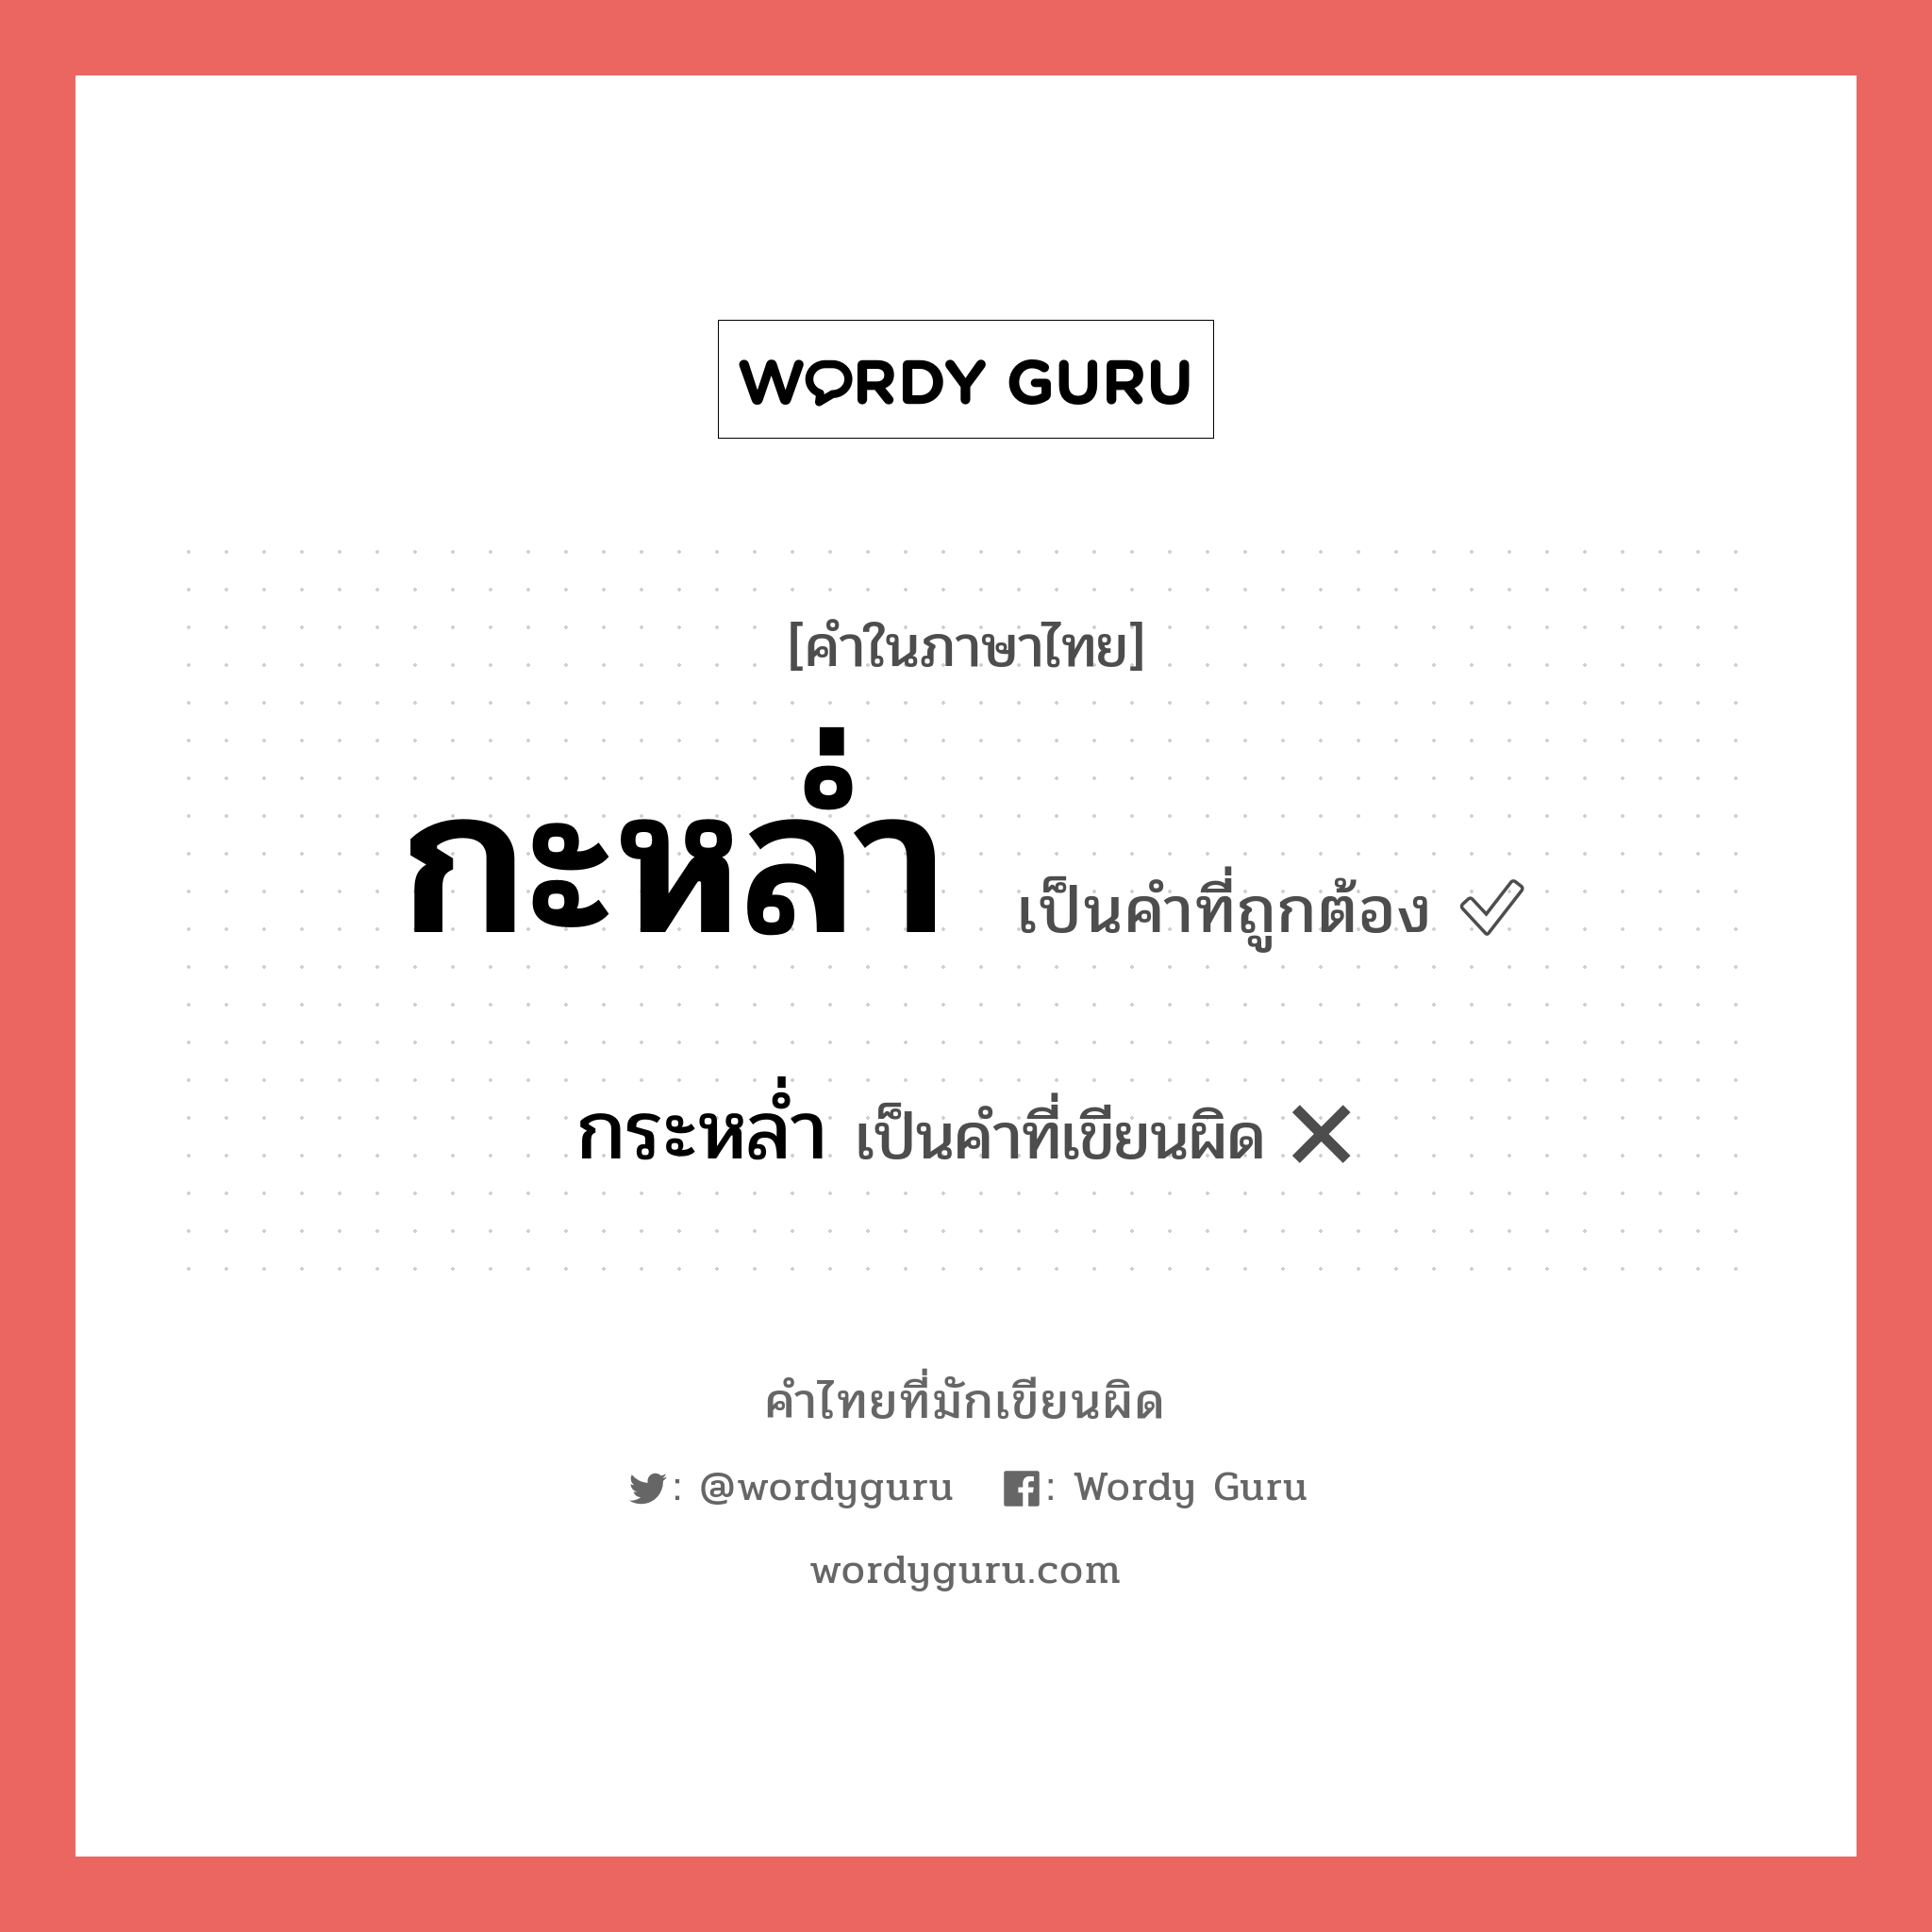 กะหล่ำ หรือ กระหล่ำ คำไหนเขียนถูก?, คำในภาษาไทยที่มักเขียนผิด กะหล่ำ คำที่ผิด ❌ กระหล่ำ